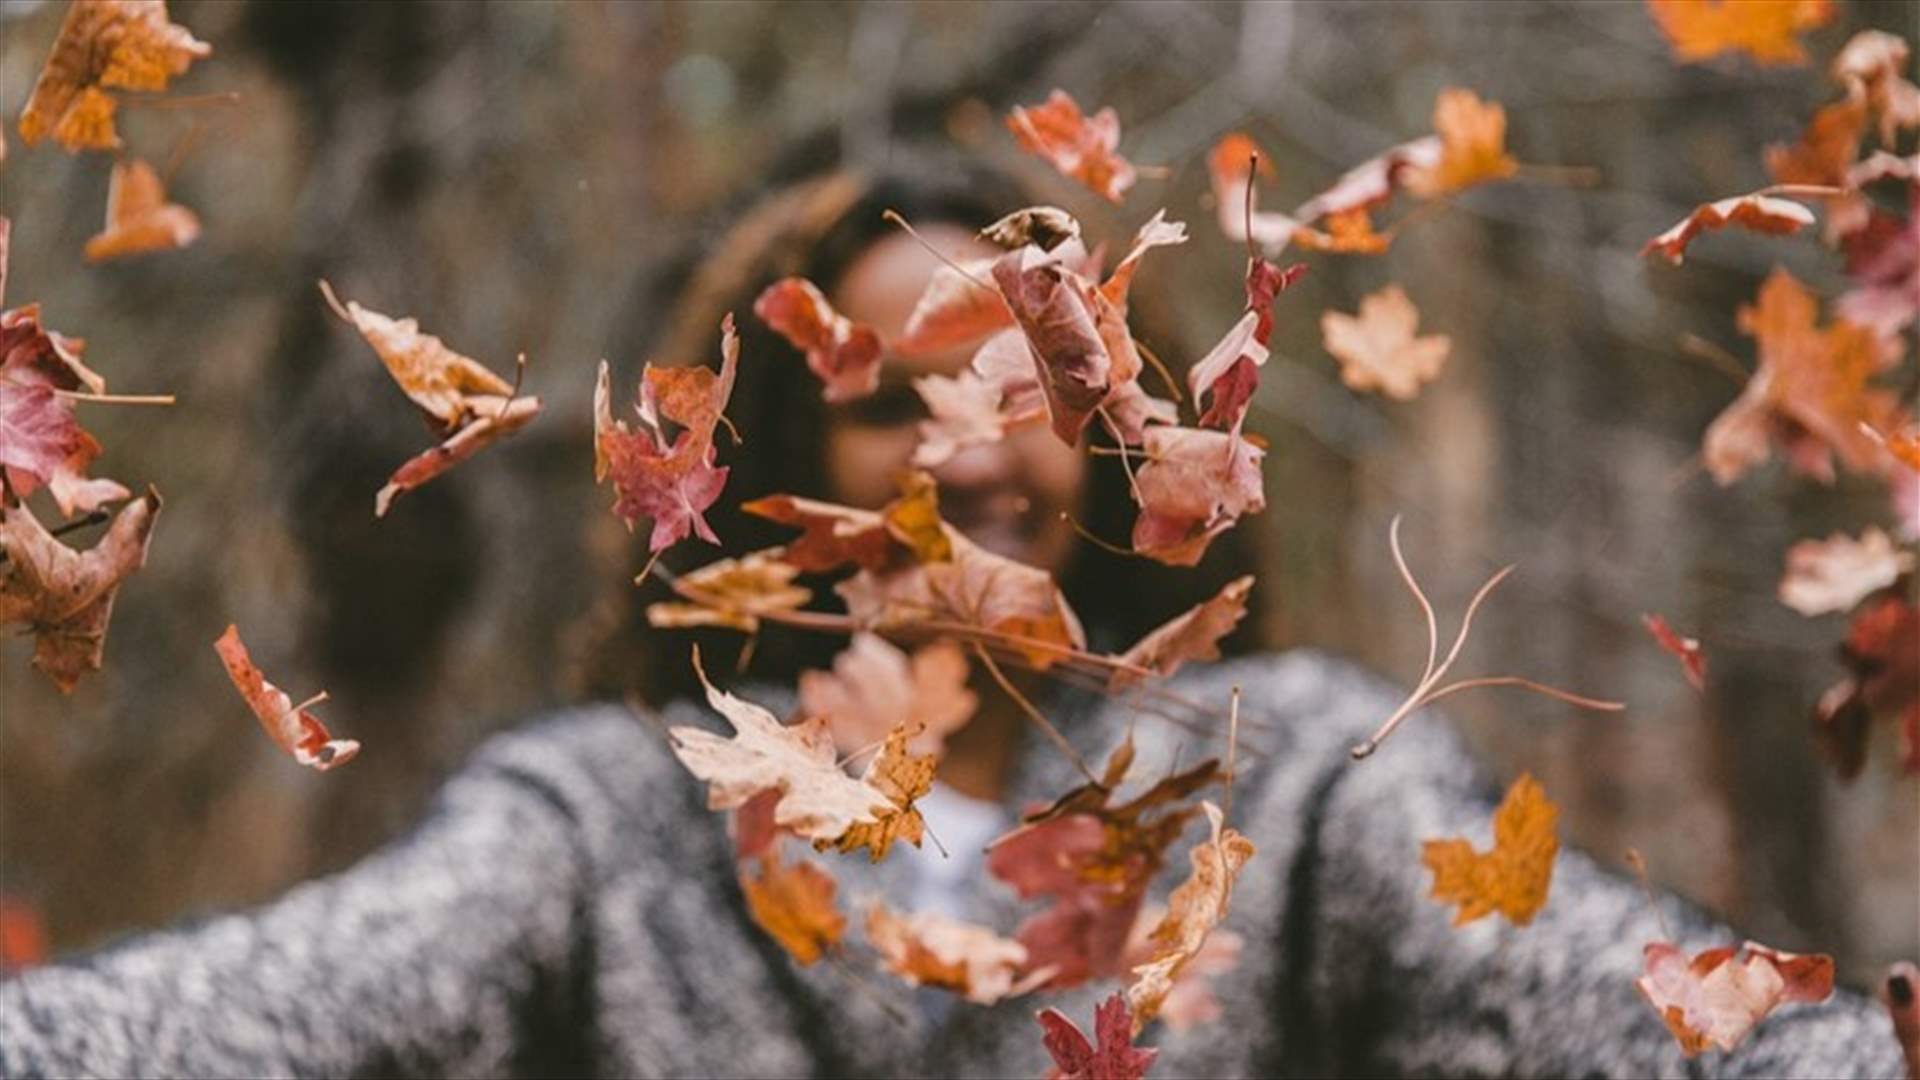 نصائح جمالية للعناية بالبشرة وتحضيرها لفصل الخريف!